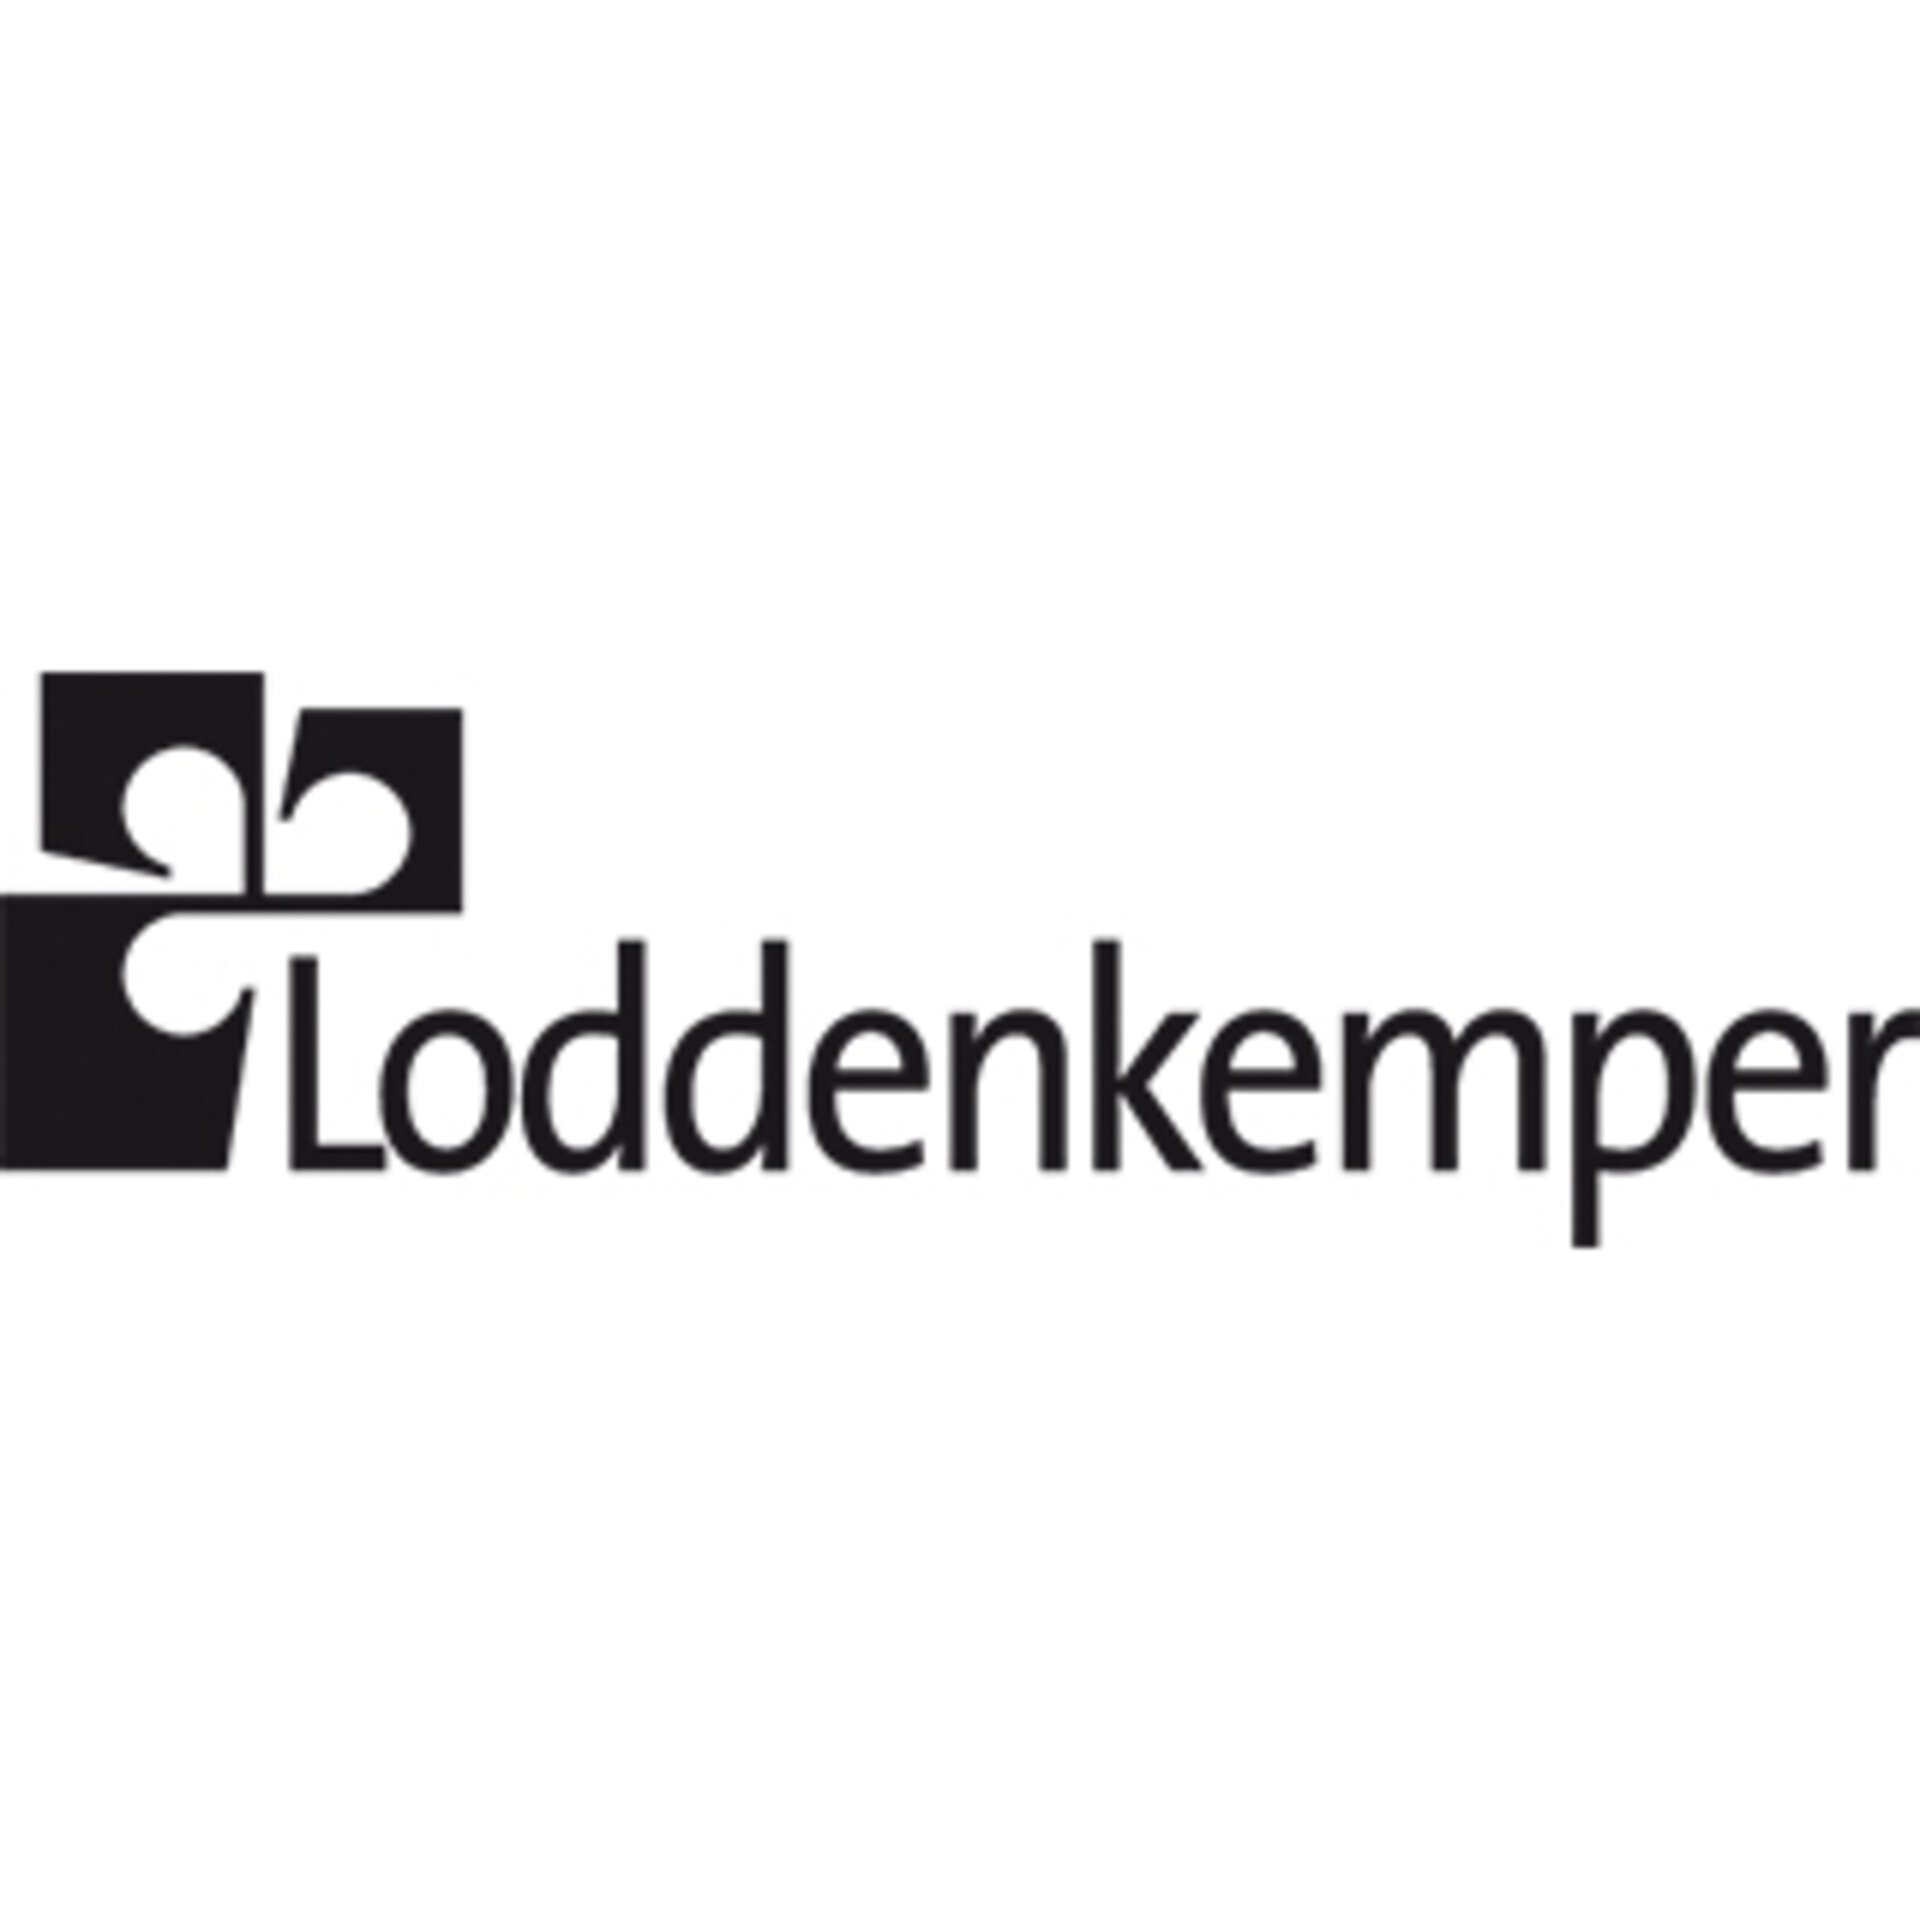 Loddenkemper Logo